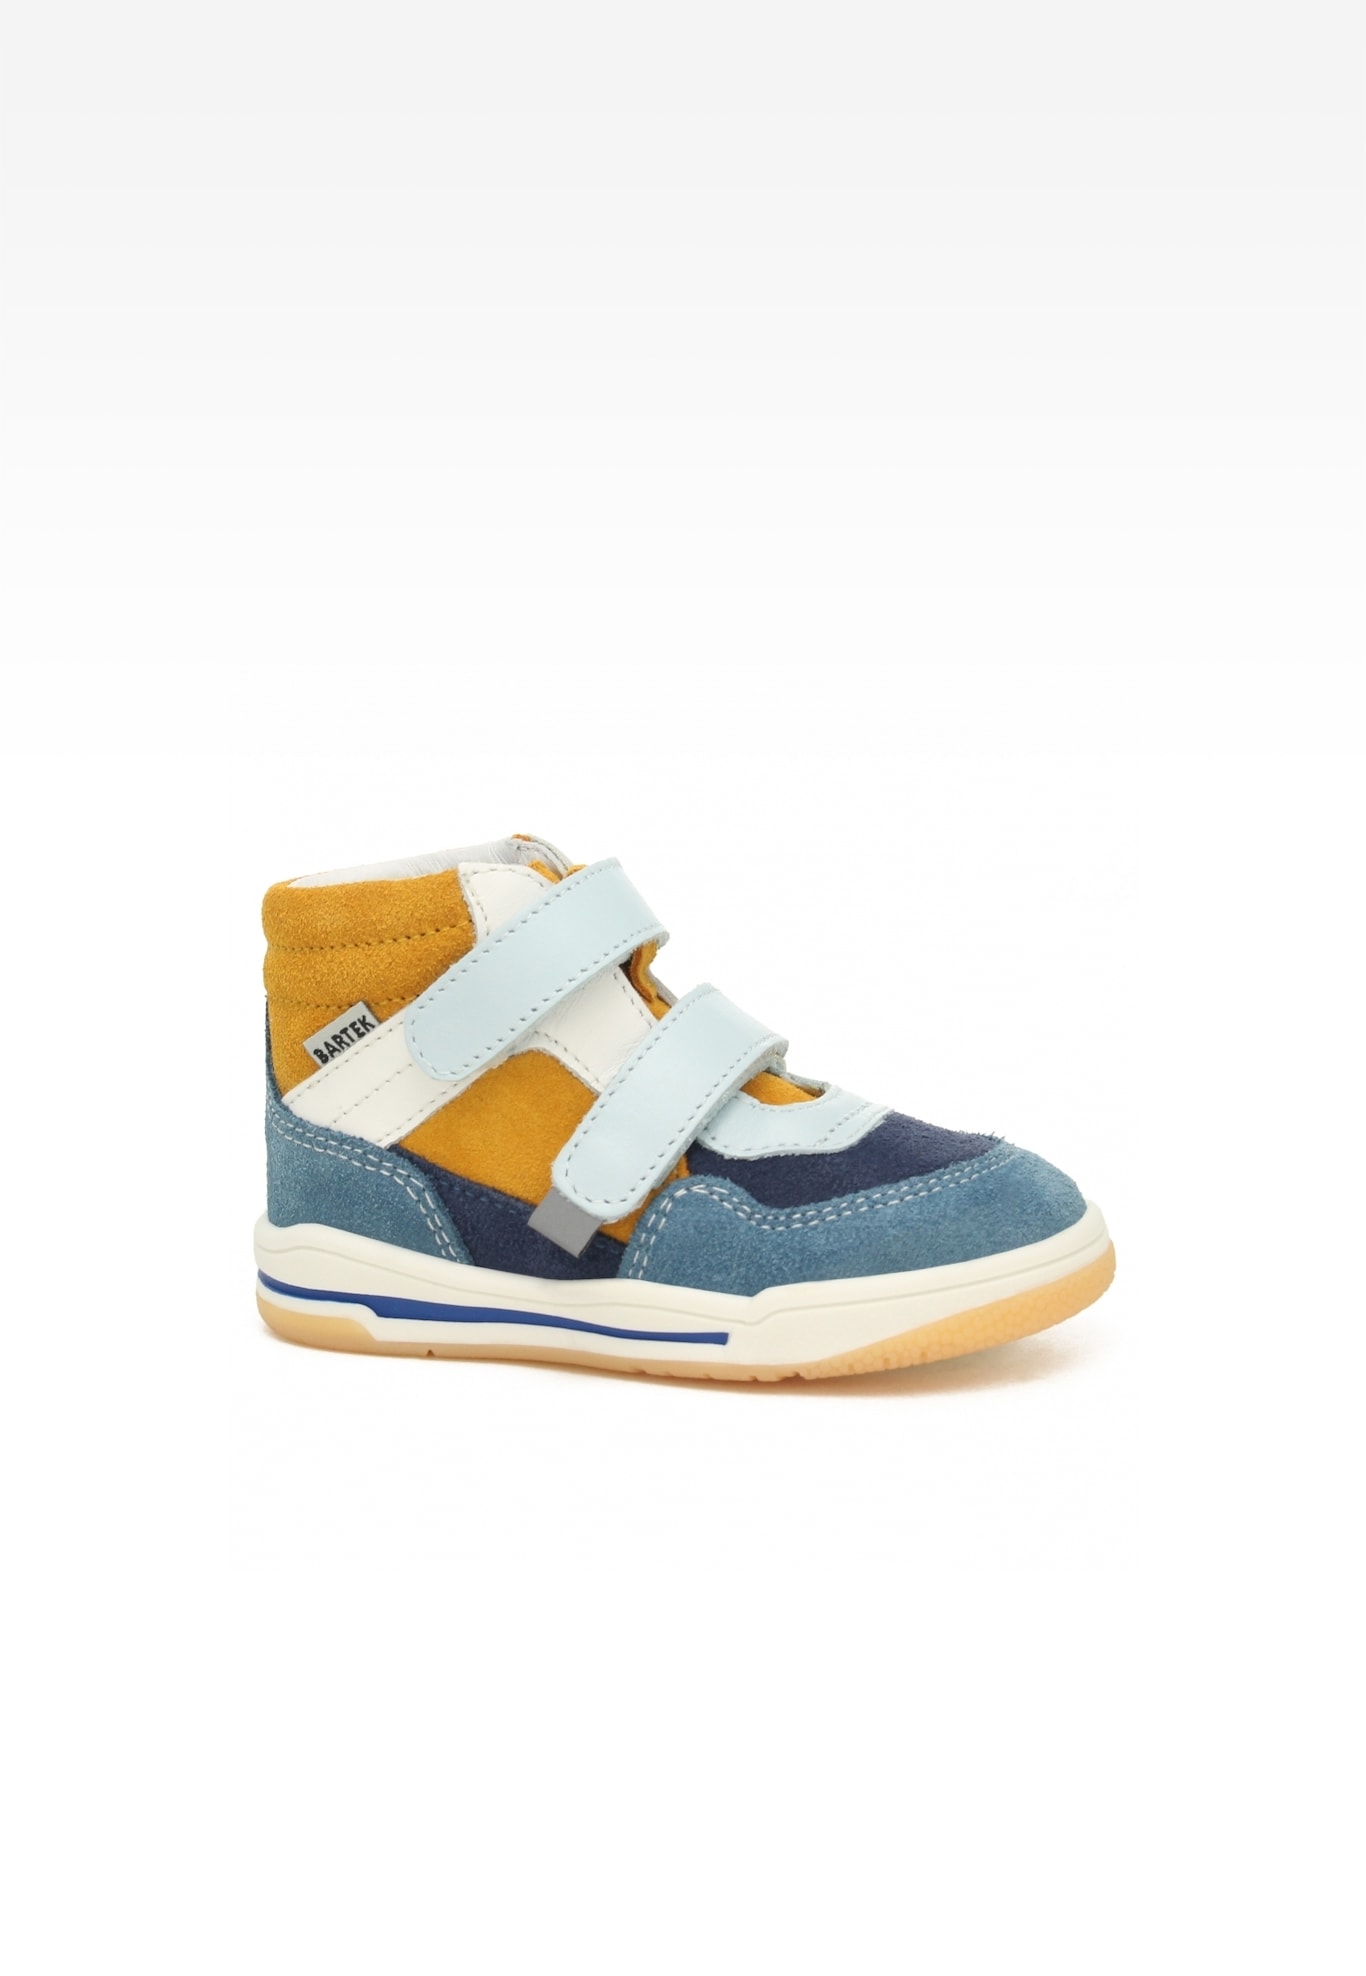 Sneakers BARTEK 116150-02, niebiesko-pomarańczowy